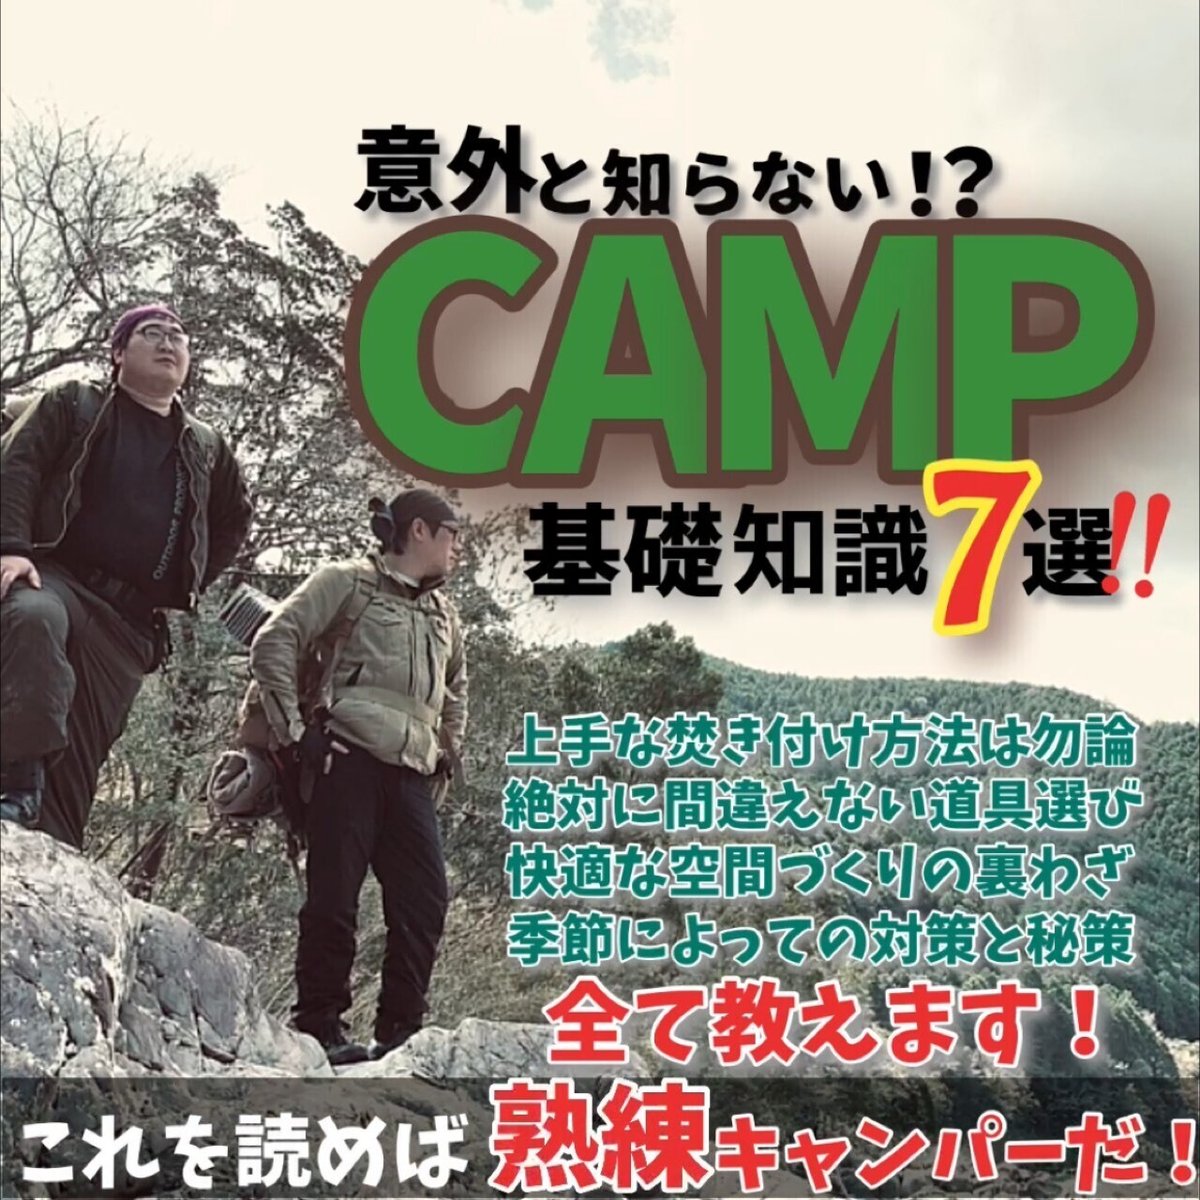 意外と知らないキャンプ基礎知識７選！！高知県西部幡多郡を中心として活動しているキャンパー兼キャンプ系ユーチューバー。